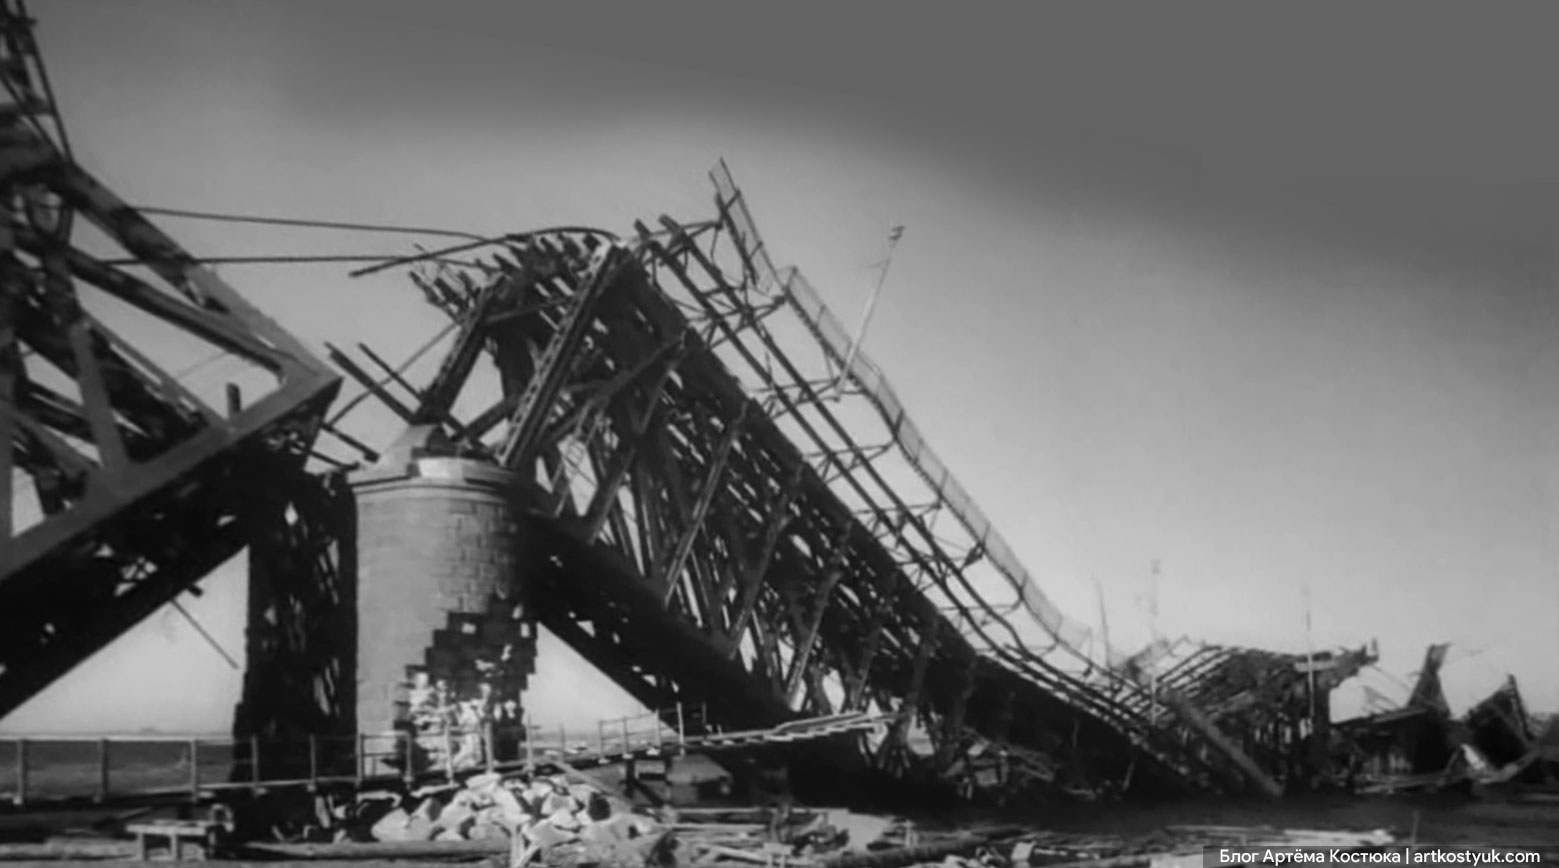 Почему у Амурского моста деревянные опоры? Новости Днепра